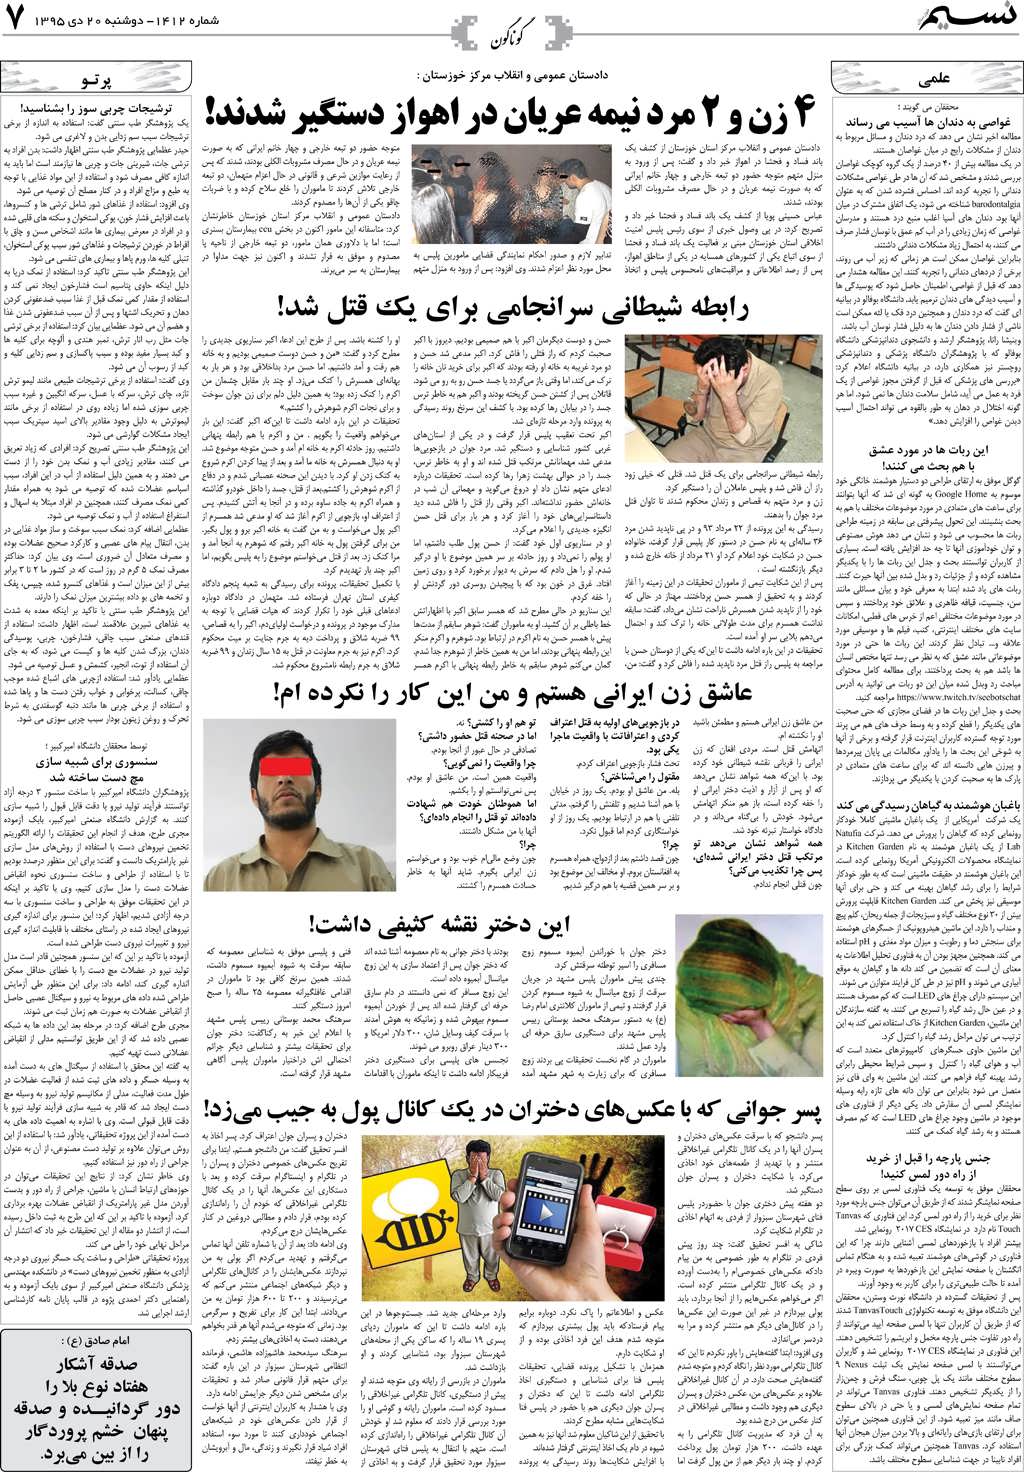 صفحه گوناگون روزنامه نسیم شماره 1412